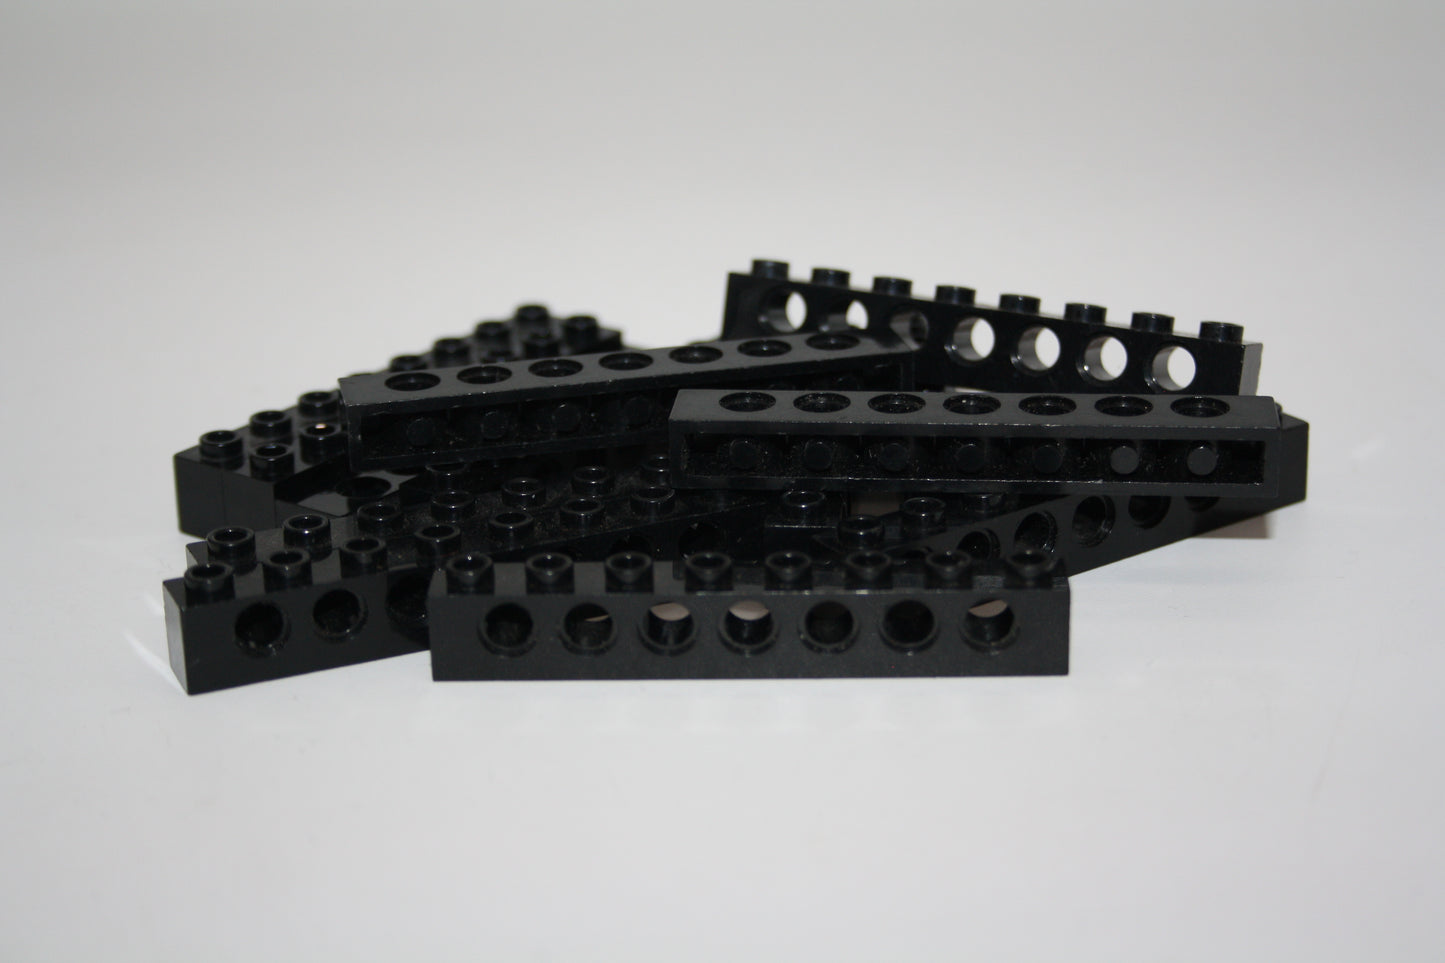 LEGO® Technik - 1x8 Brick/Stein/Lochbalken mit Loch - schwarz - 3702 - 6-13x Sparpaket